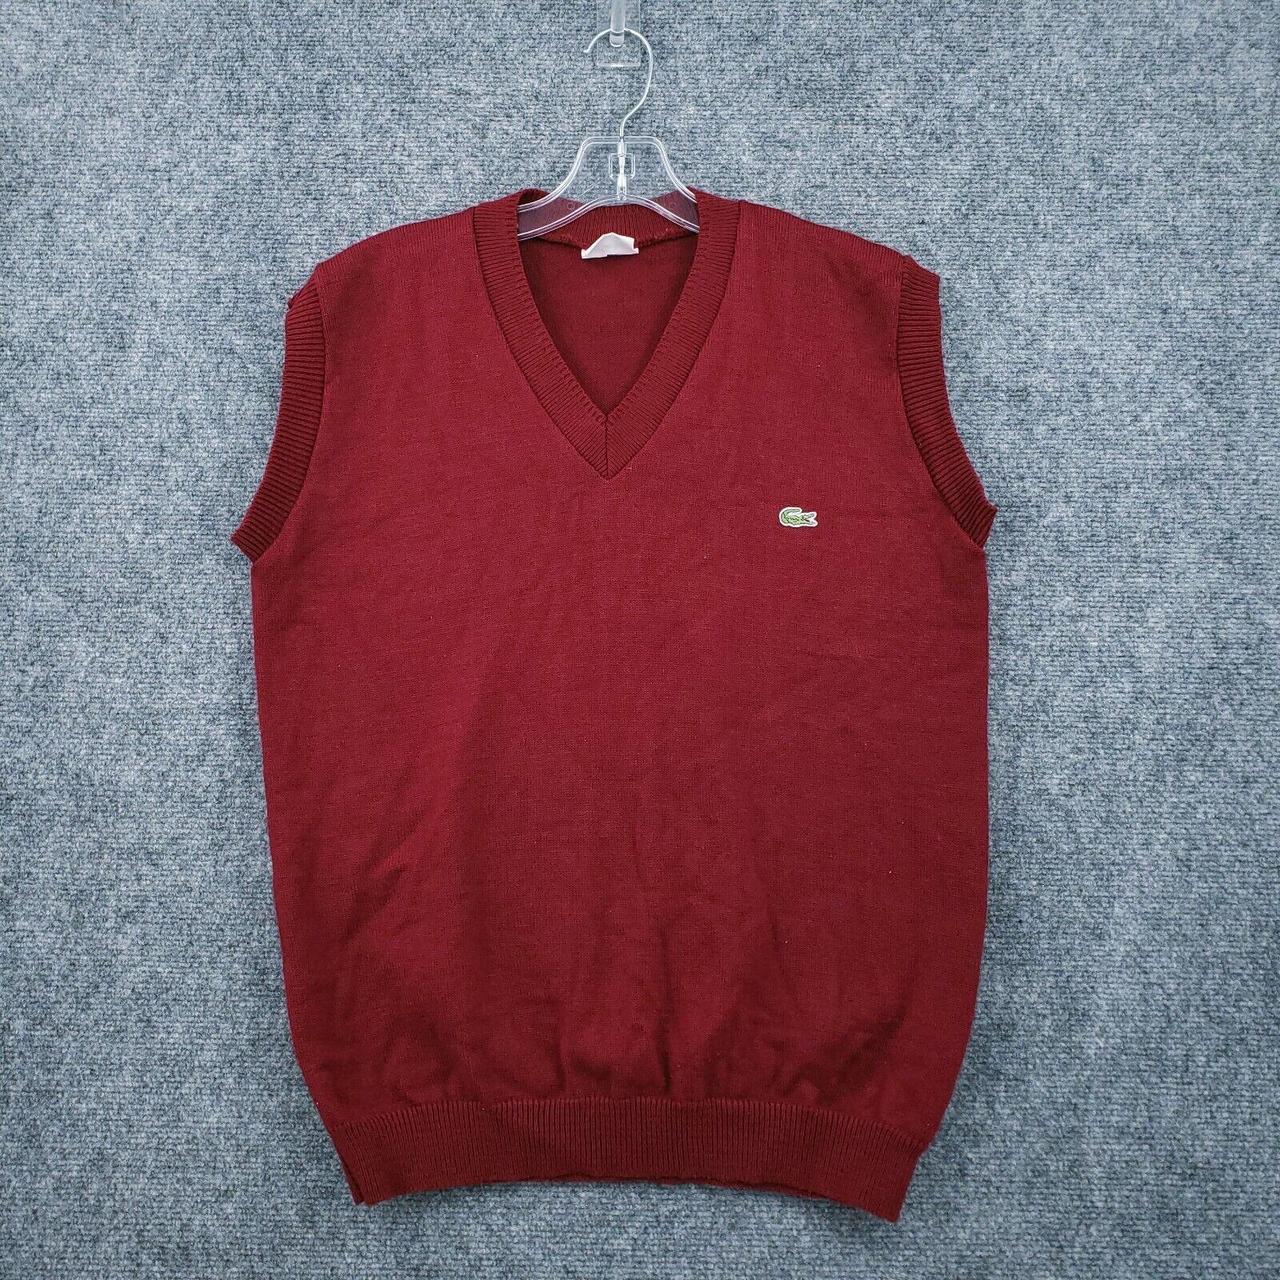 Lacoste Sweater Mens 7 US Medium Red Vest V-Neck... - Depop